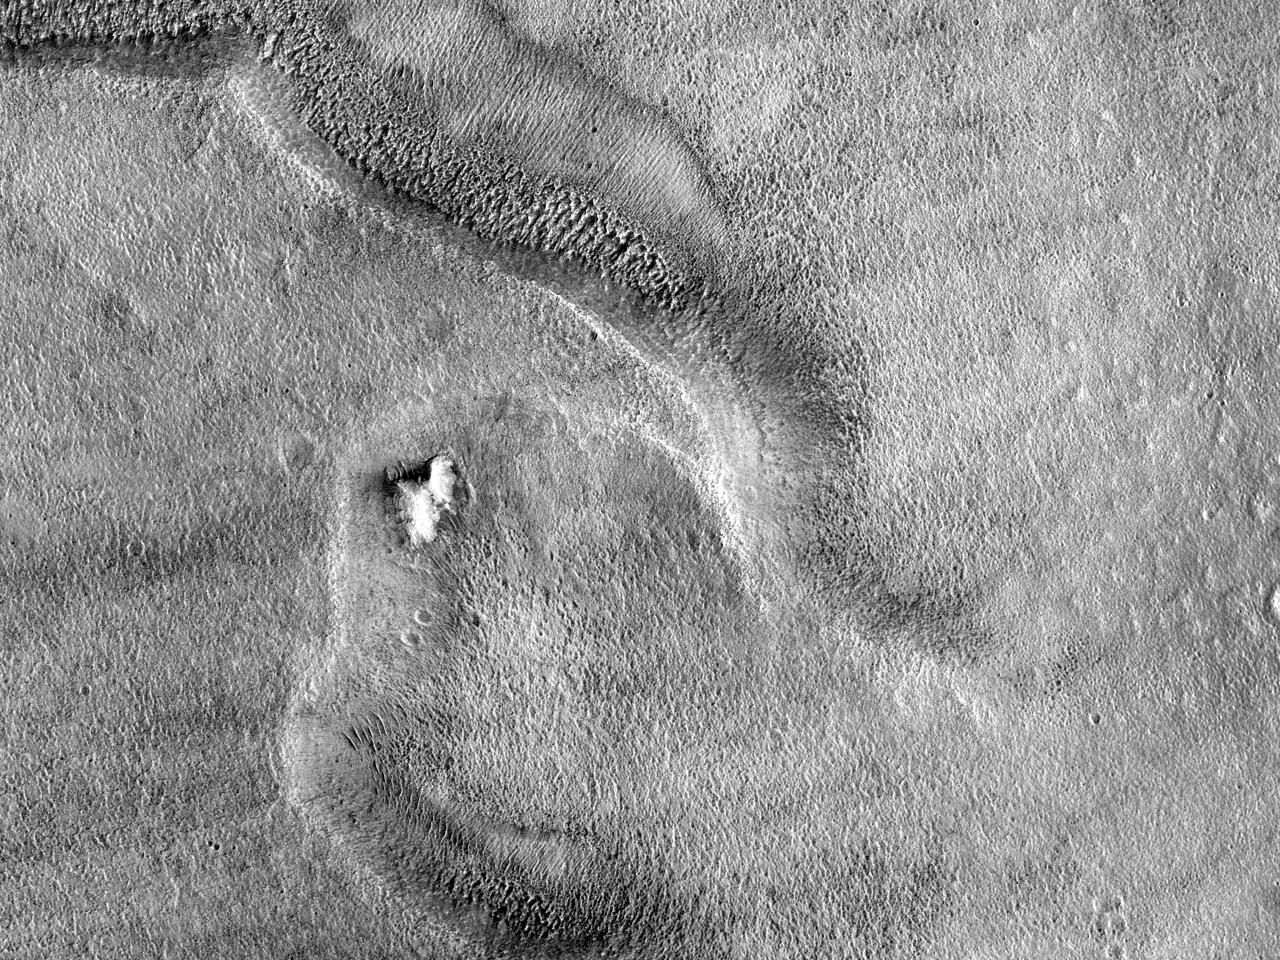 Capes diverses en un pendent al sud de Reull Vallis